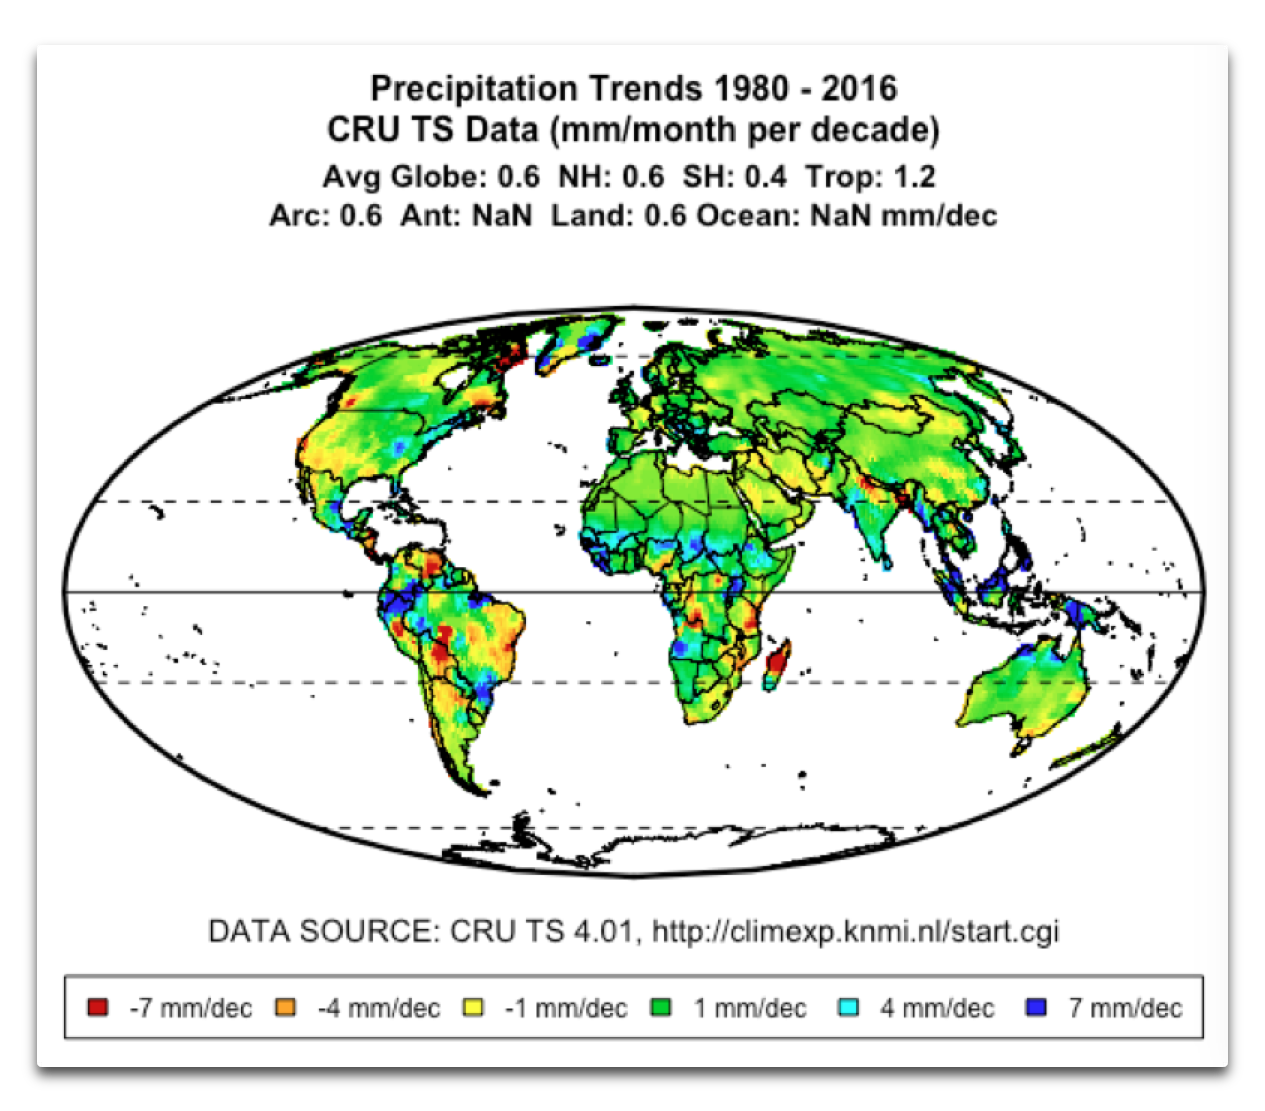 precipitation-trends-1980-2016-cruts-data-willis-eschenbach